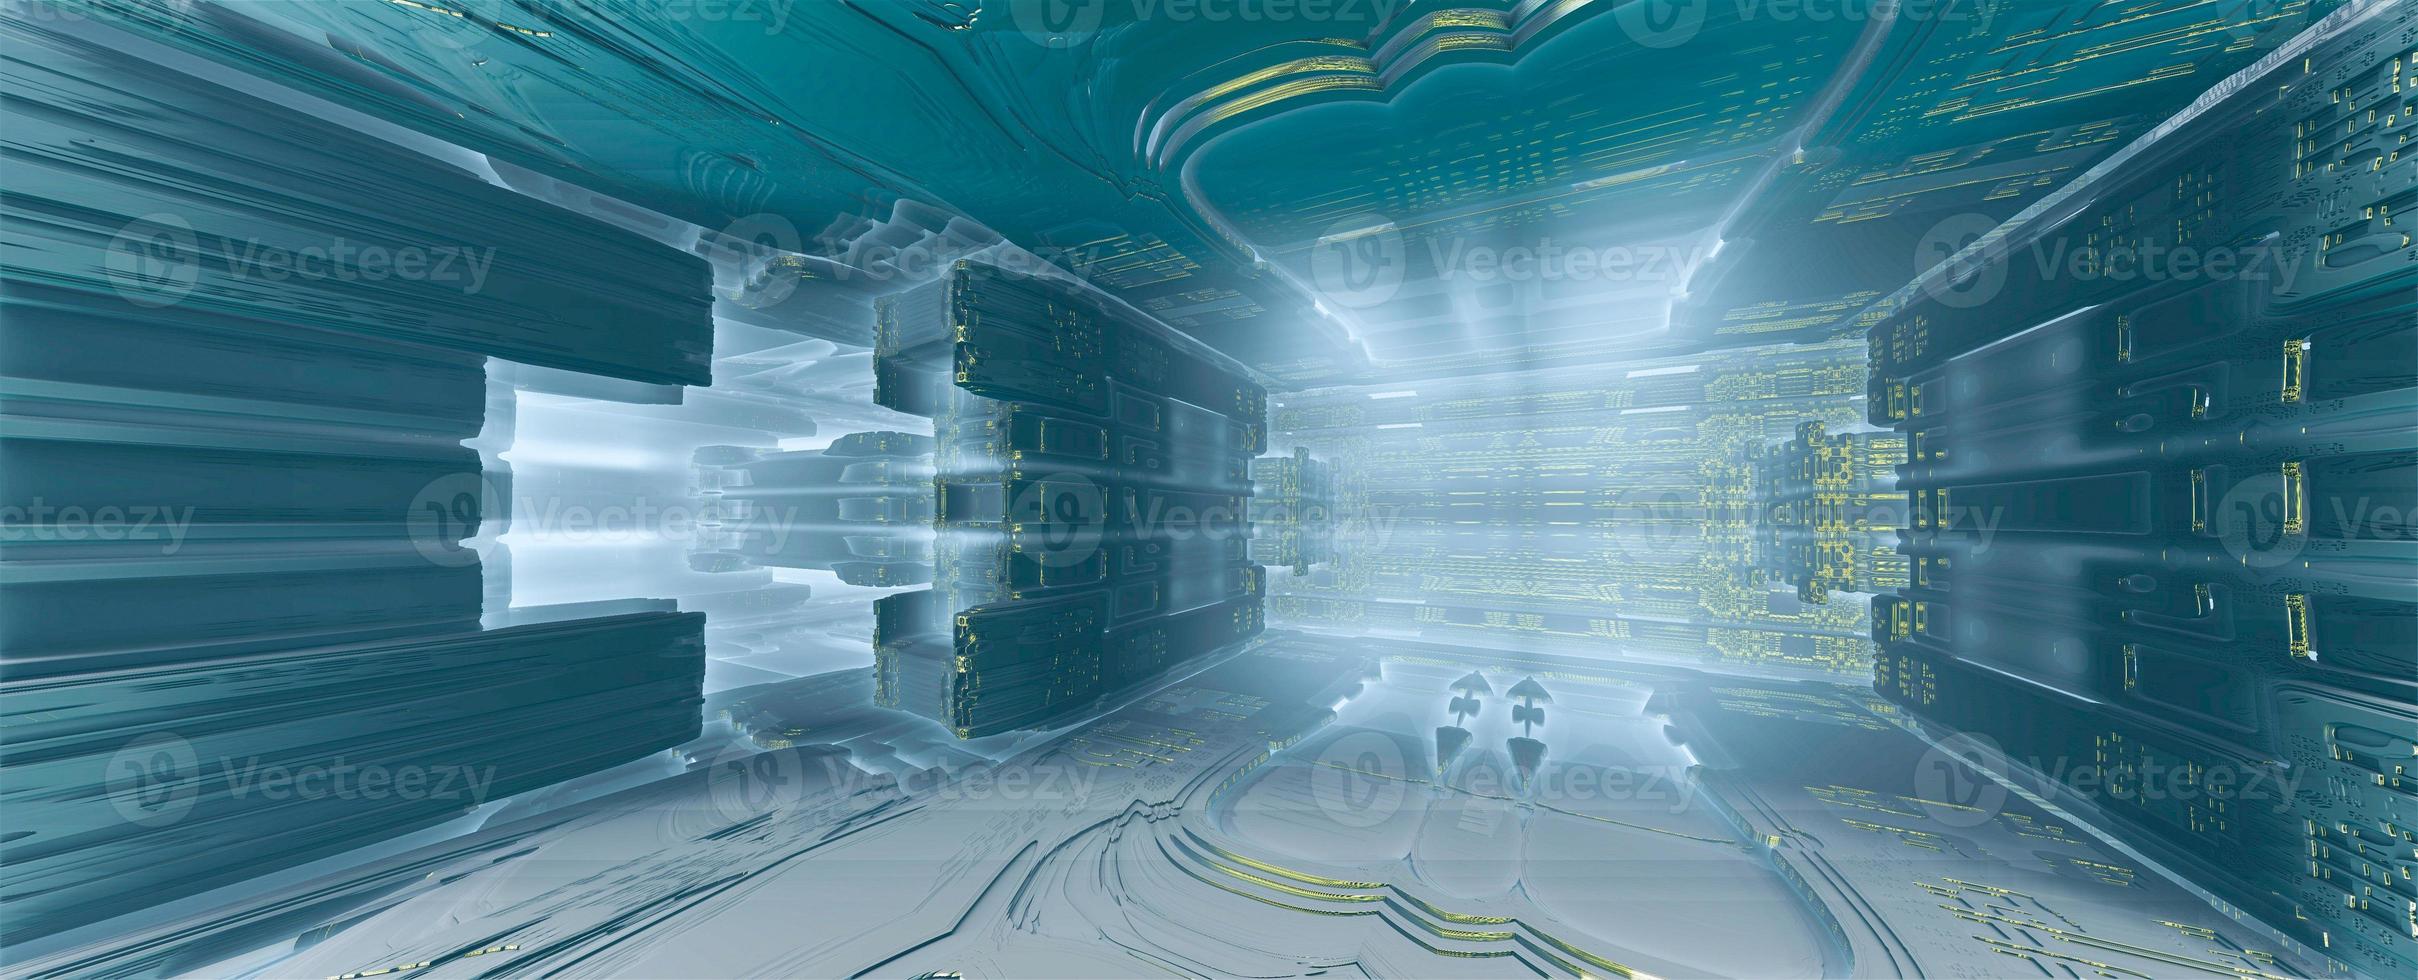 diseño fractal generado por ordenador abstracto. Ilustración de extraterrestres 3d de una hermosa habitación infinita matemática mandelbrot conjunto fractal azul metálico. foto